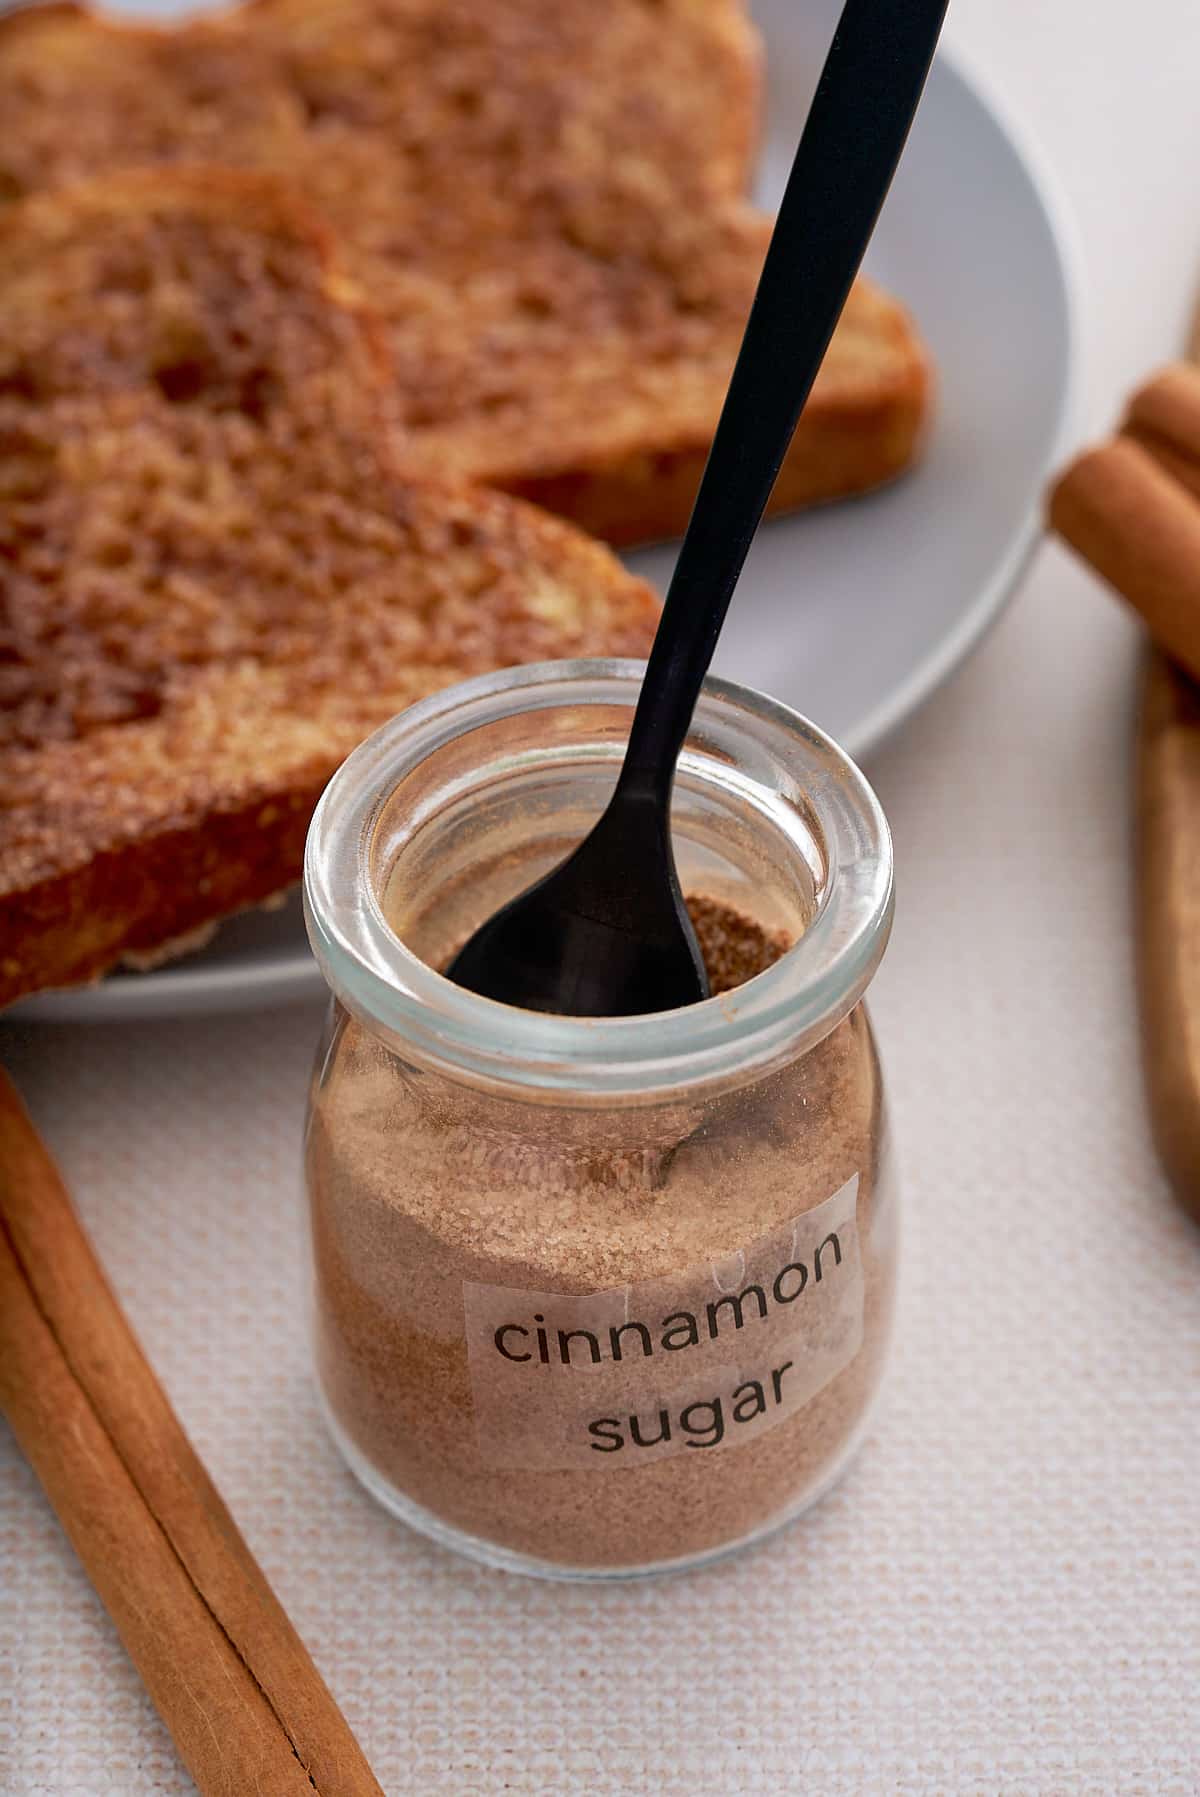 A labeled jar of cinnamon sugar with cinnamon toast set alongside.